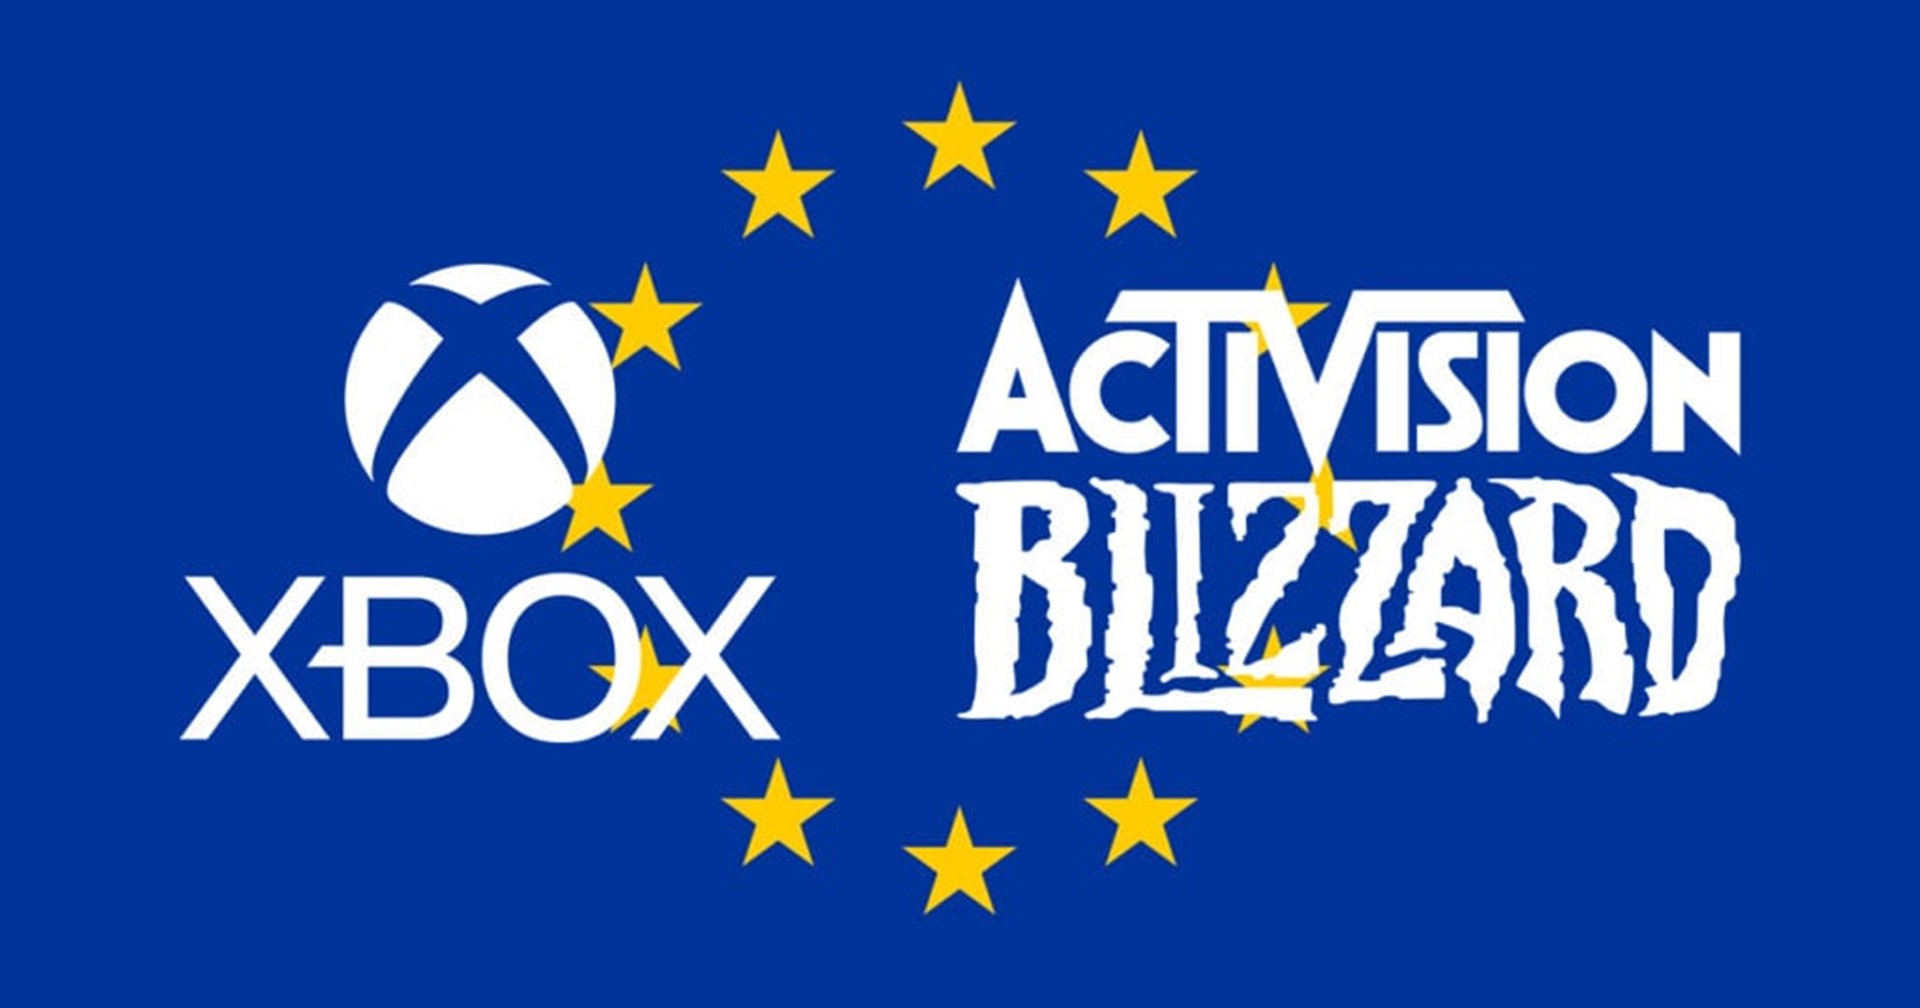 คณะกรรมาธิการยุโรปอนุมัติข้อเสนอการเข้าซื้อ Activision Blizzard ของ Microsoft แล้ว